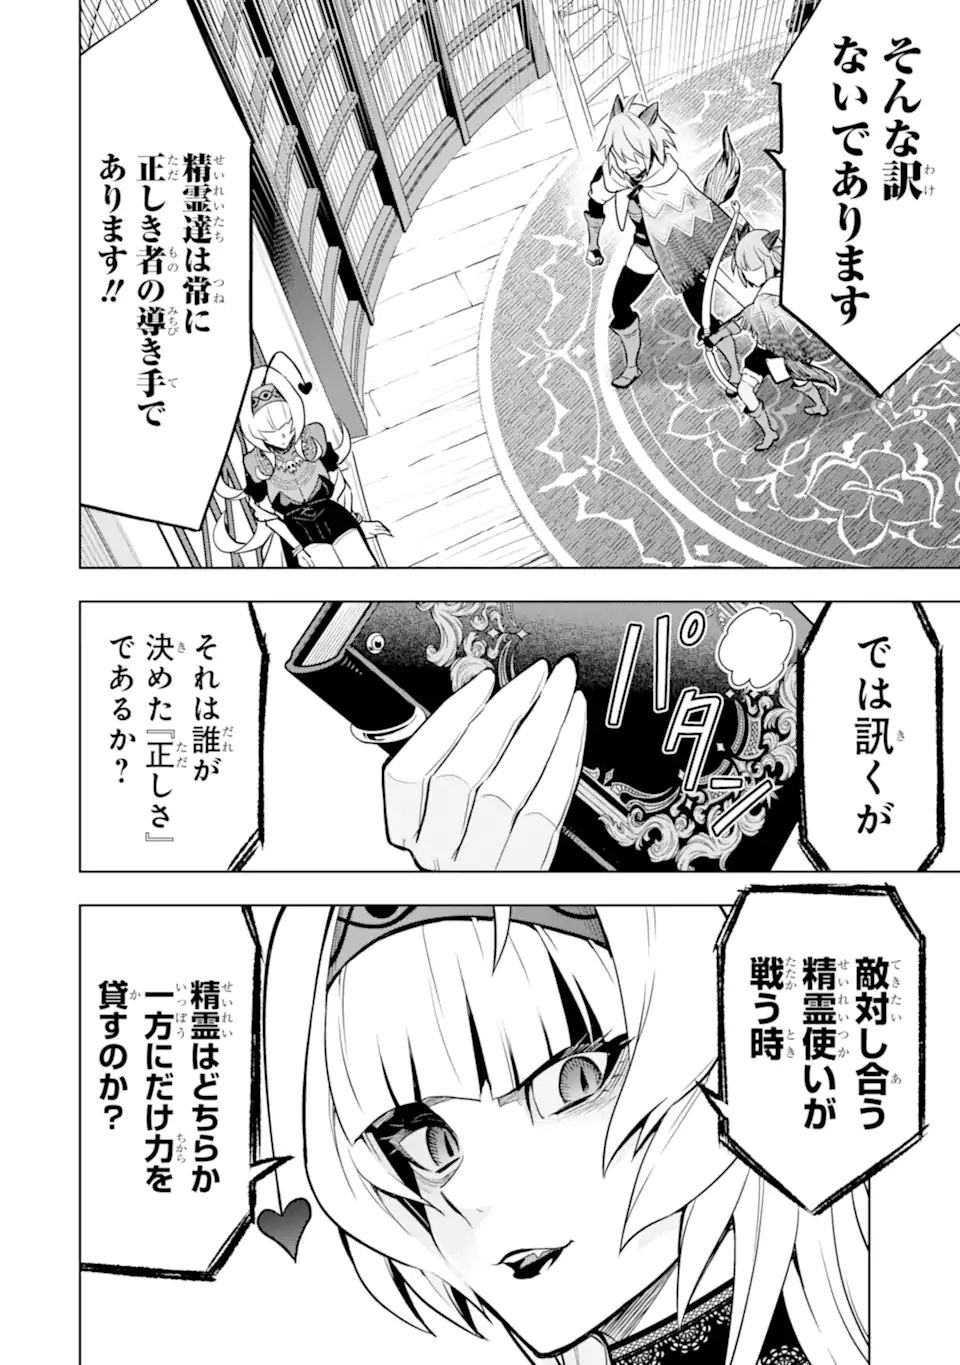 Koko wa Ore ni Makasete Saki ni Ike to Itte kara 10 Nen ga Tattara Densetsu ni Natteita - Chapter 39.1 - Page 4